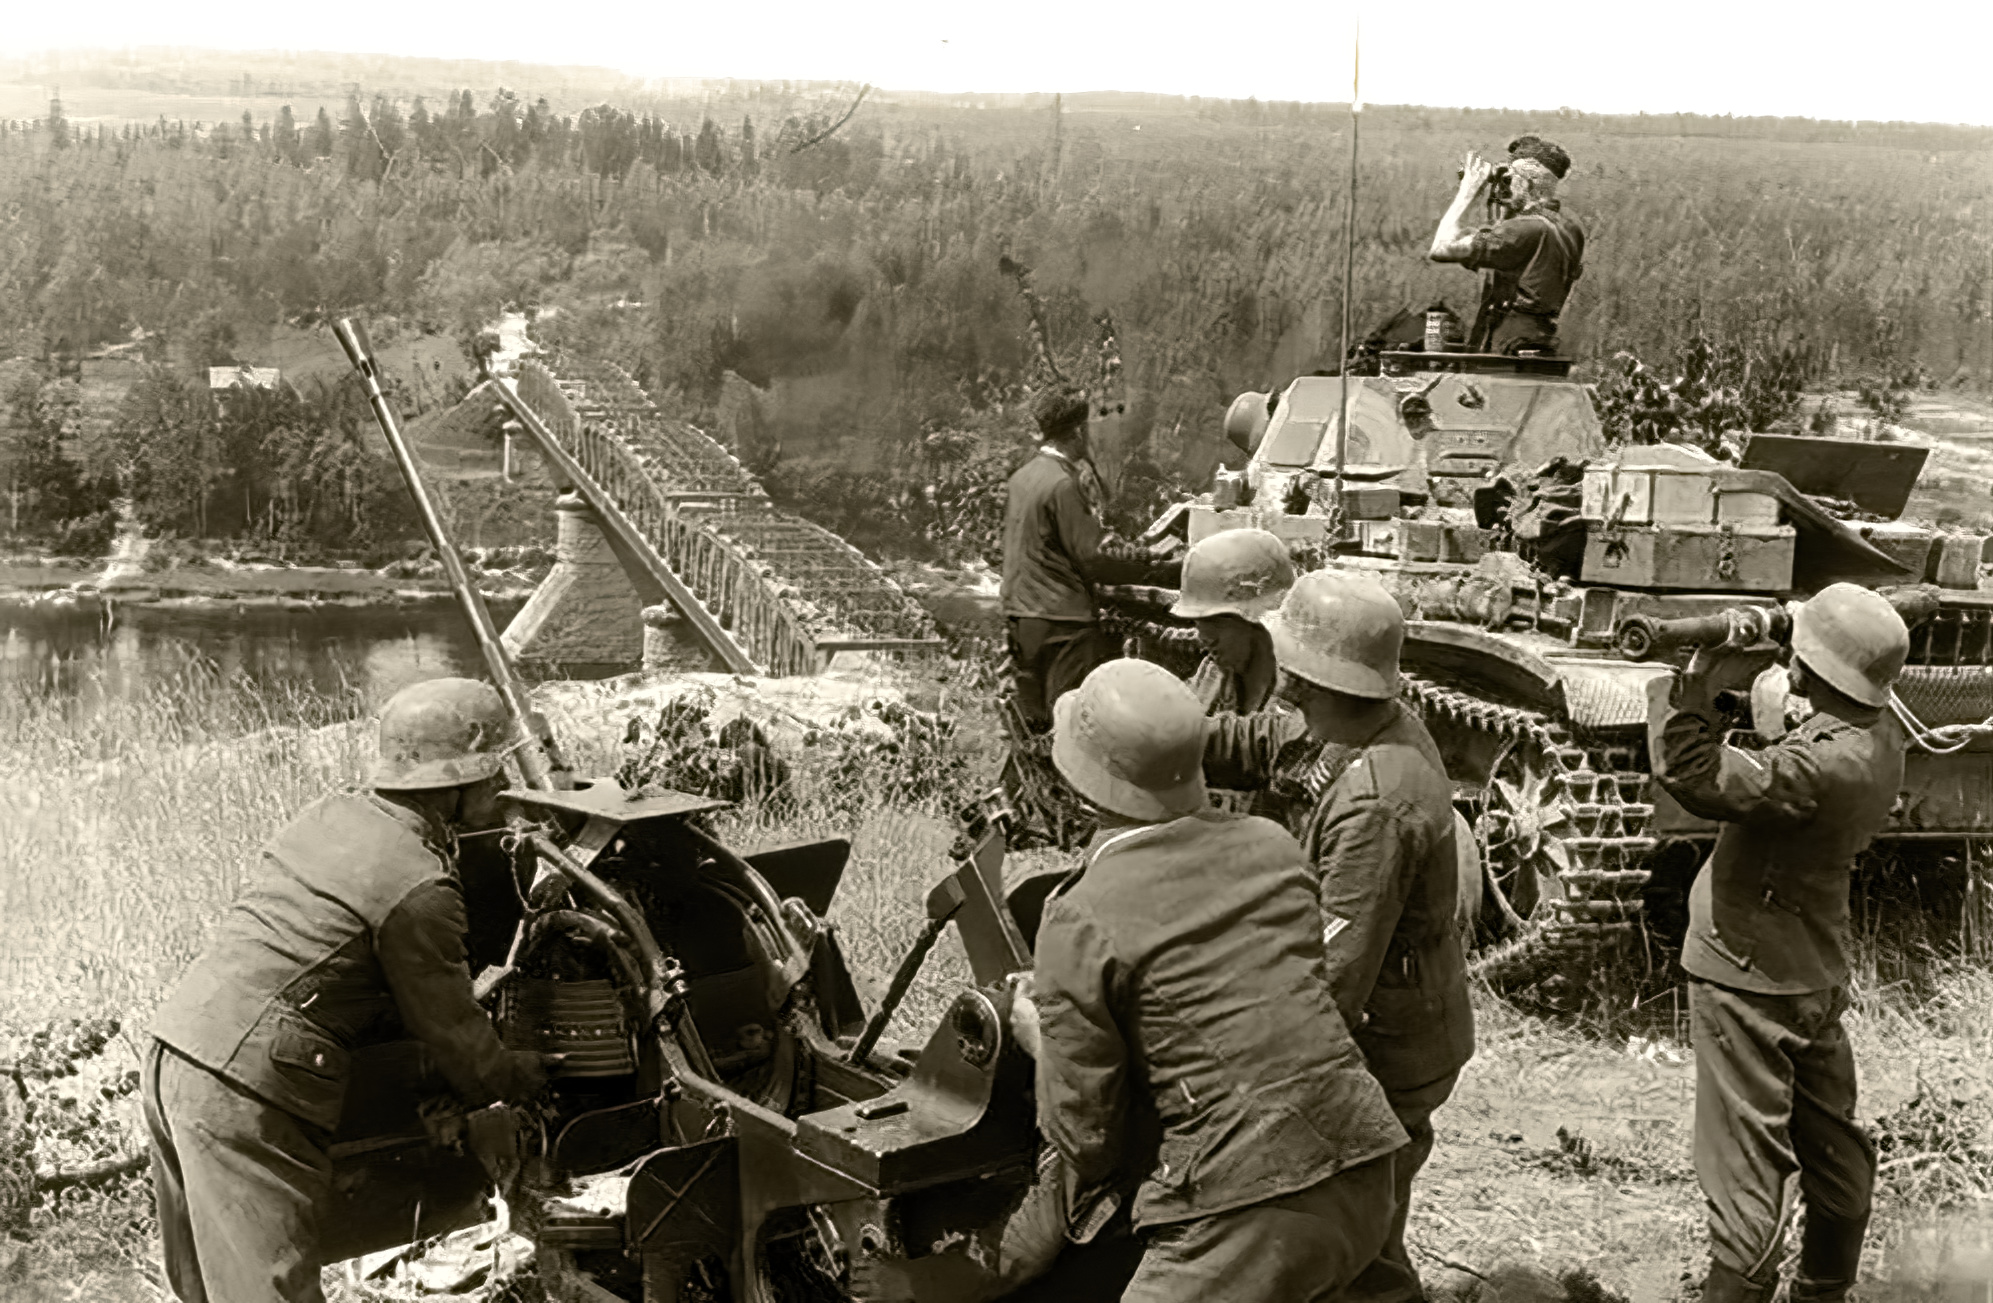 22 июня июль 1941 г. Операция Барбаросса лето 1941. Немецкие танки 1941 года Барбаросса. Немецкие солдаты 22 июня 1941. Немцы на границе СССР 1941.